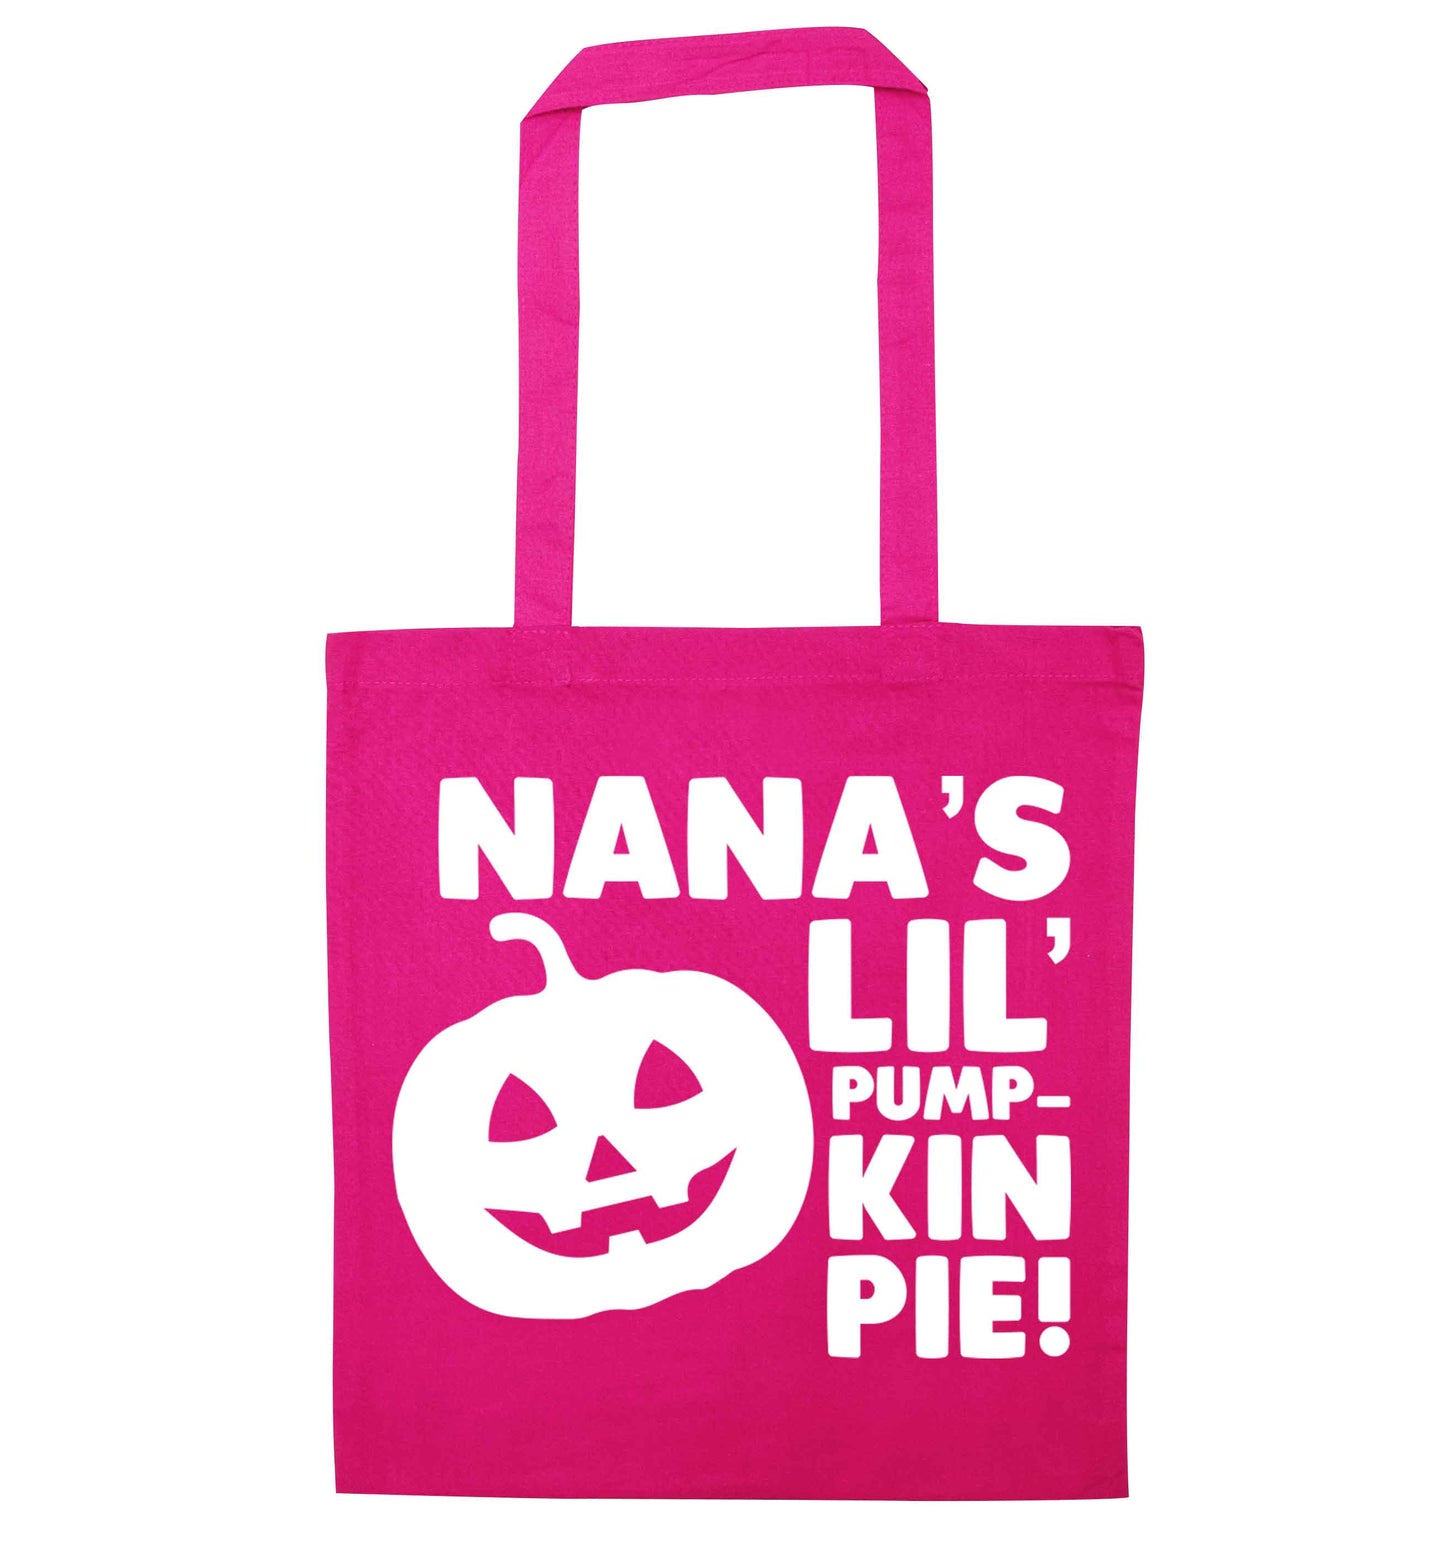 Nana's lil' pumpkin pie pink tote bag